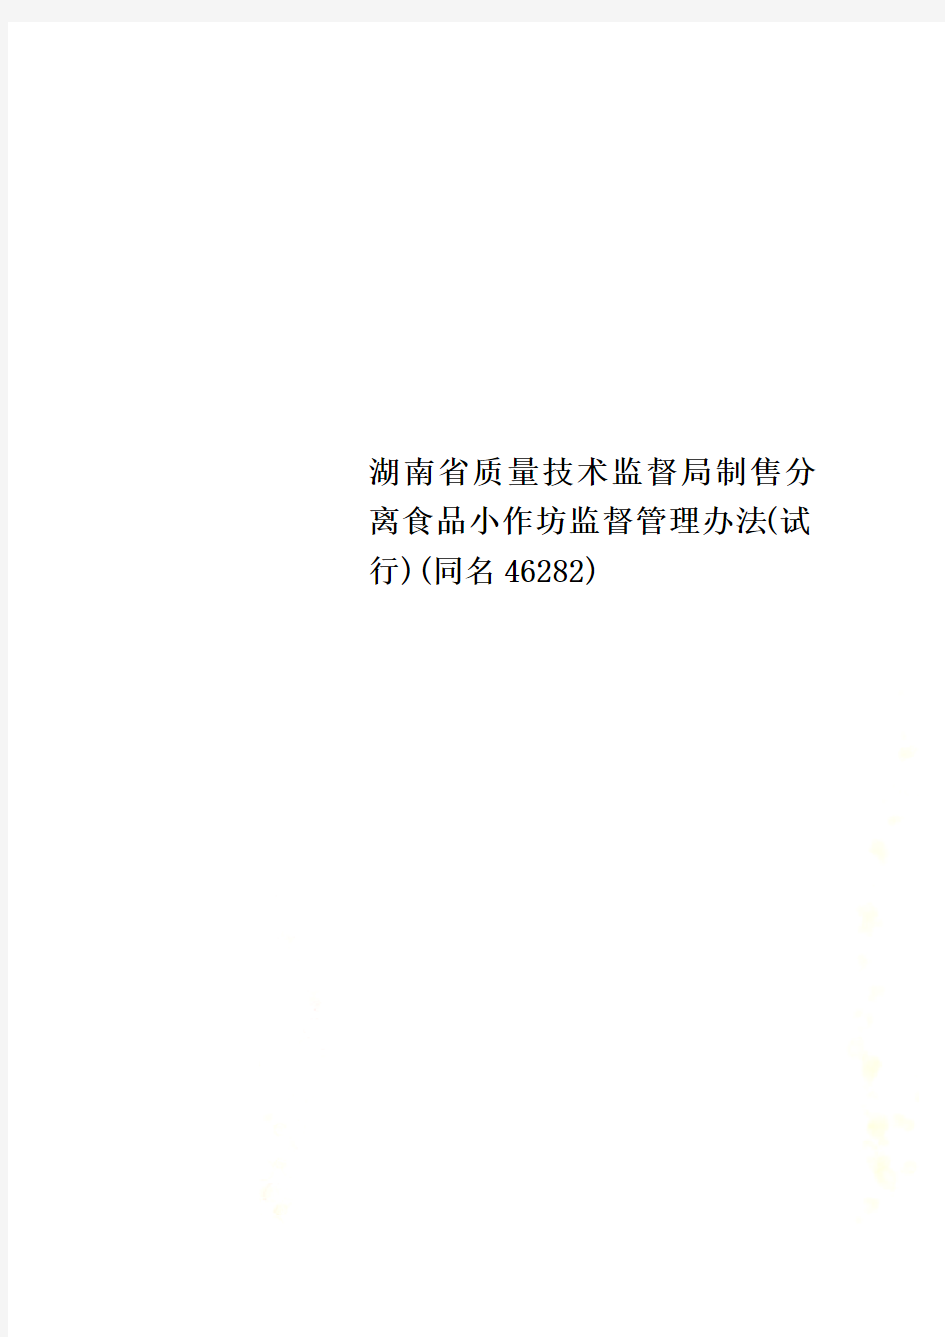 湖南省质量技术监督局制售分离食品小作坊监督管理办法(试行)(同名46282)